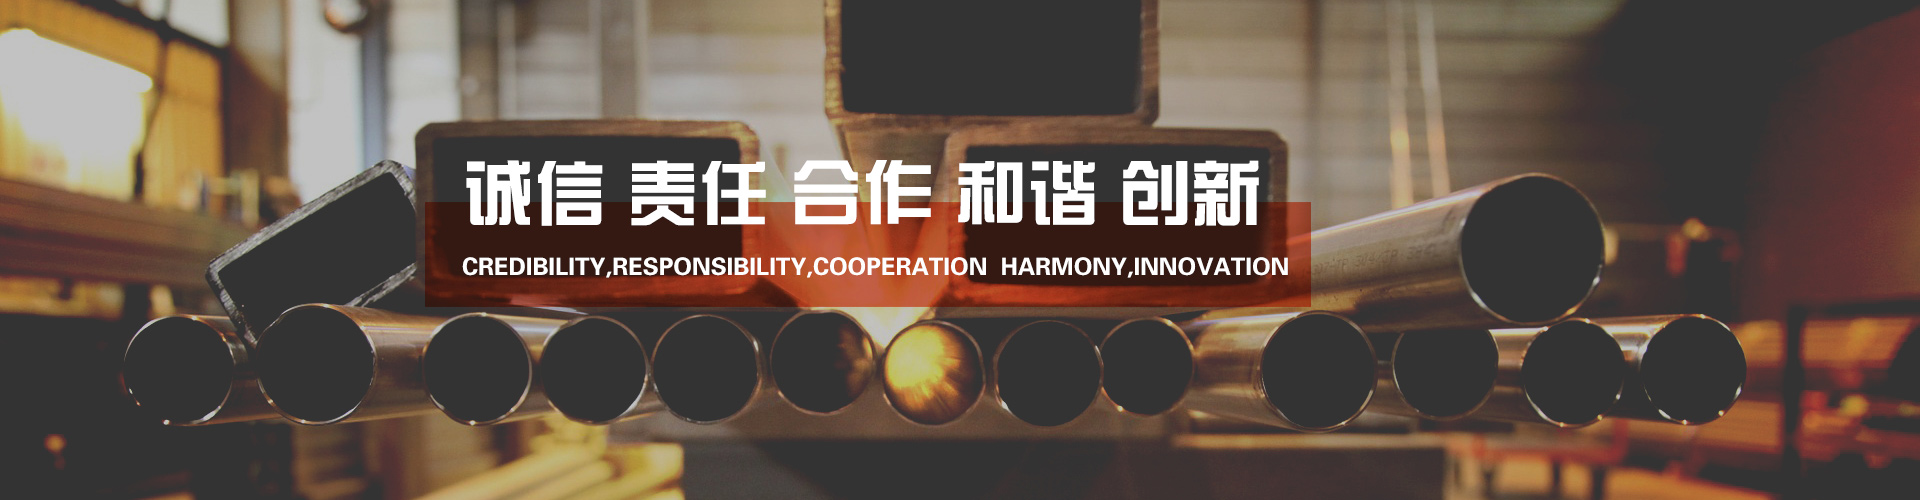 *12届中国材料大会暨国际材料工艺设备、分析测试、科学器材及实验室设备展览会